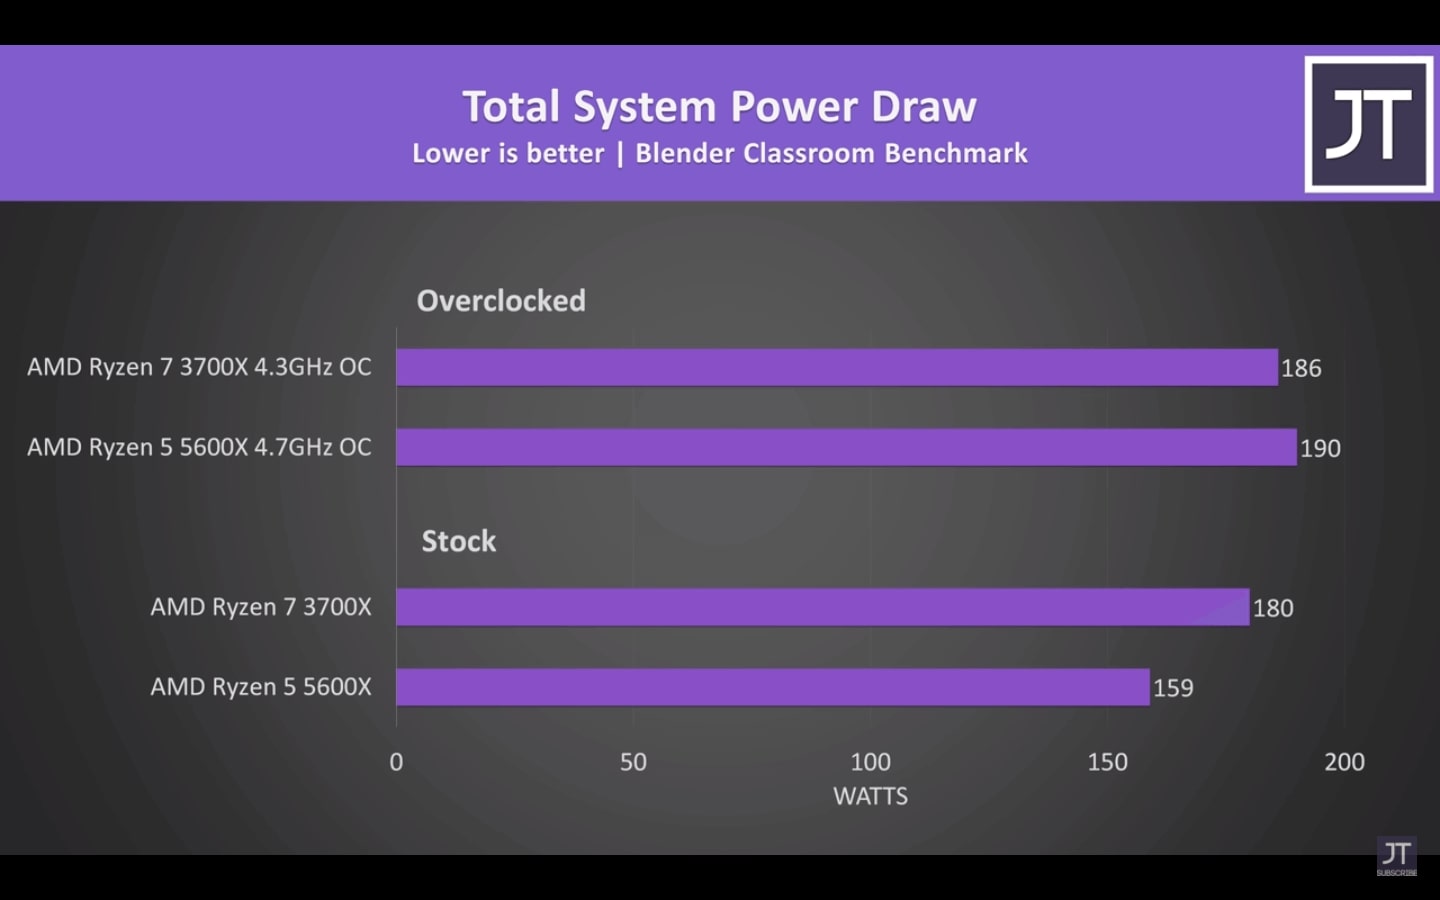 Total System Power Draw Comparing Ryzen 7 3700x vs Ryzen 5 5600x